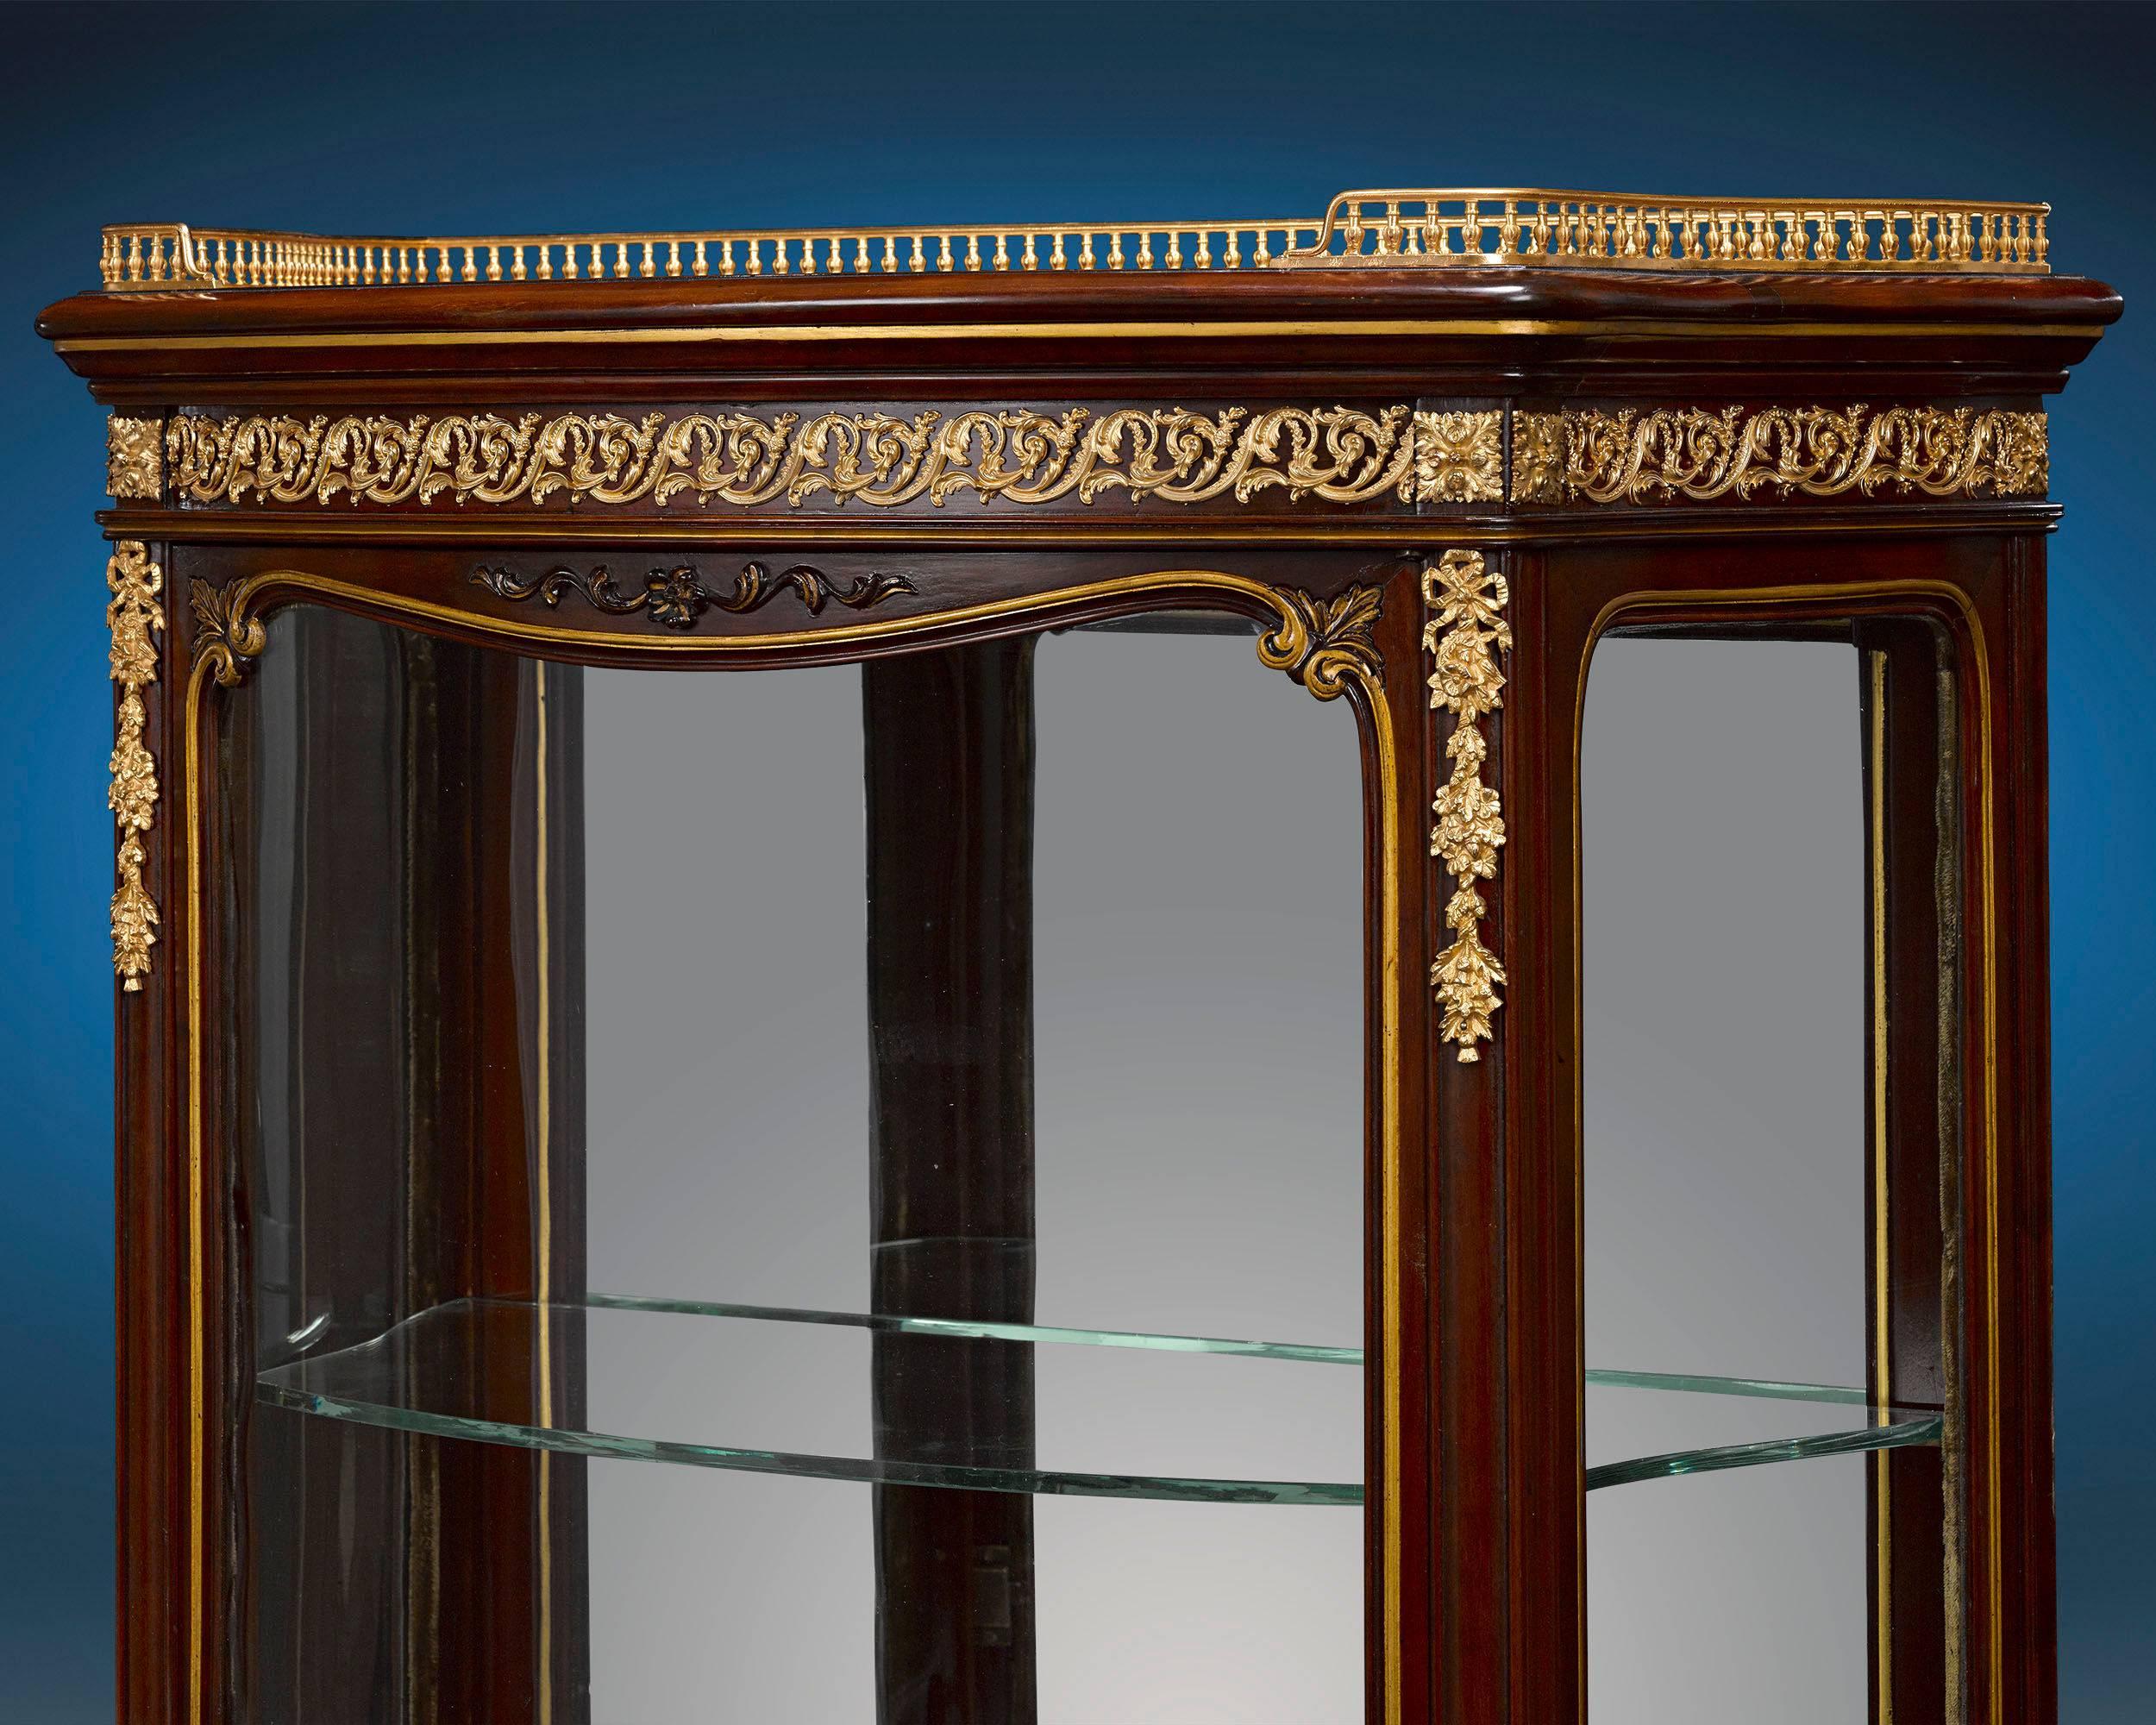 Cette vitrine rare et étonnante a été réalisée par l'illustre ébéniste français François Linke. Maître du style Louis XVI, Linke était réputé pour ses créations très originales qui mêlaient l'opulence du rococo à des éléments de l'Art nouveau. Les